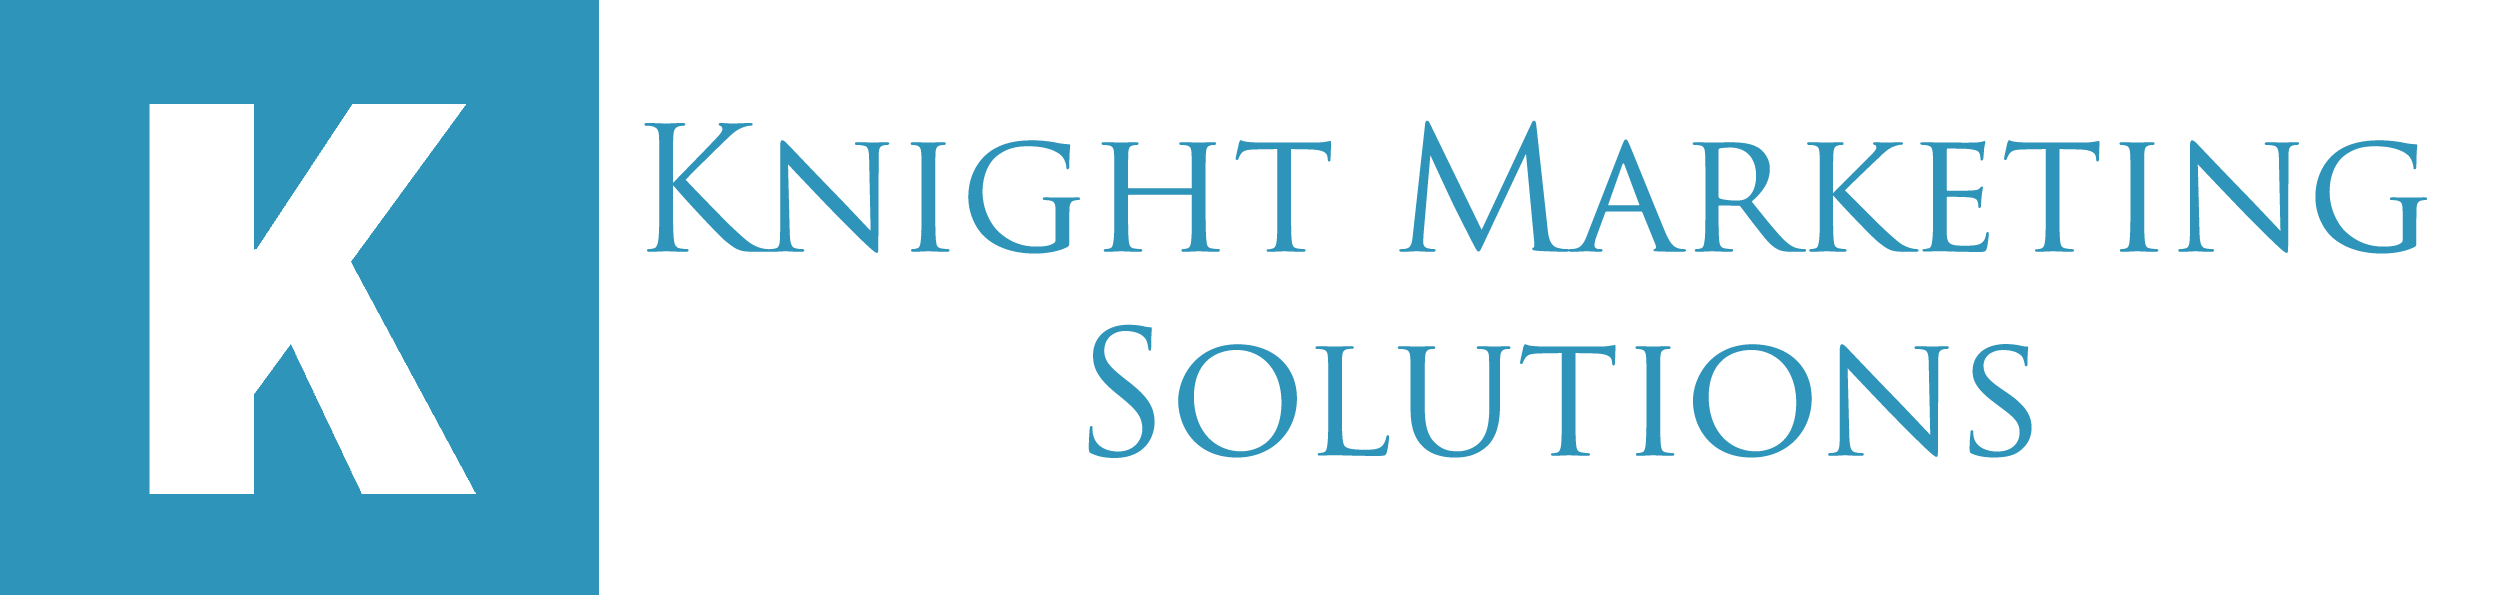 Knight Marketing Solutions